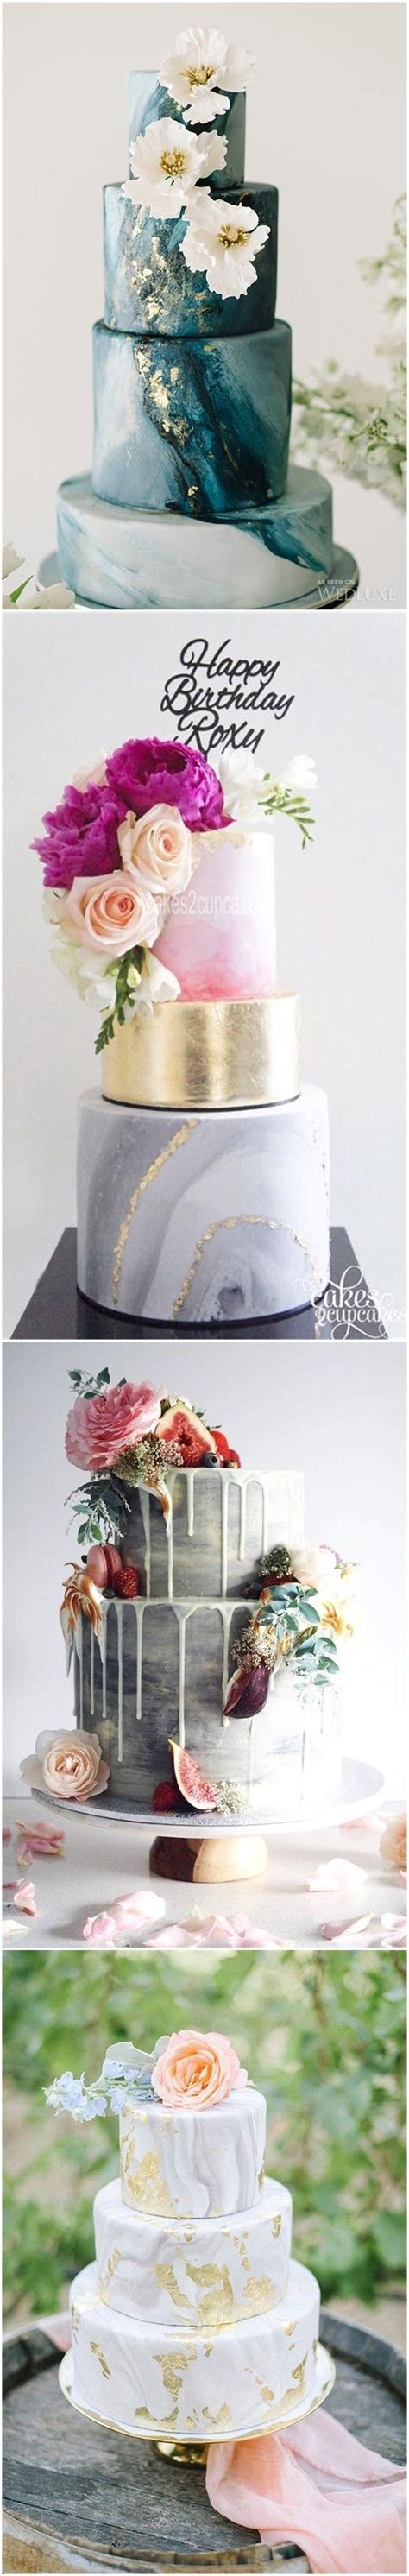 Unique And Elegant Marble Wedding Cake Ideas Unique Wedding Cakes Cool Wedding Cakes